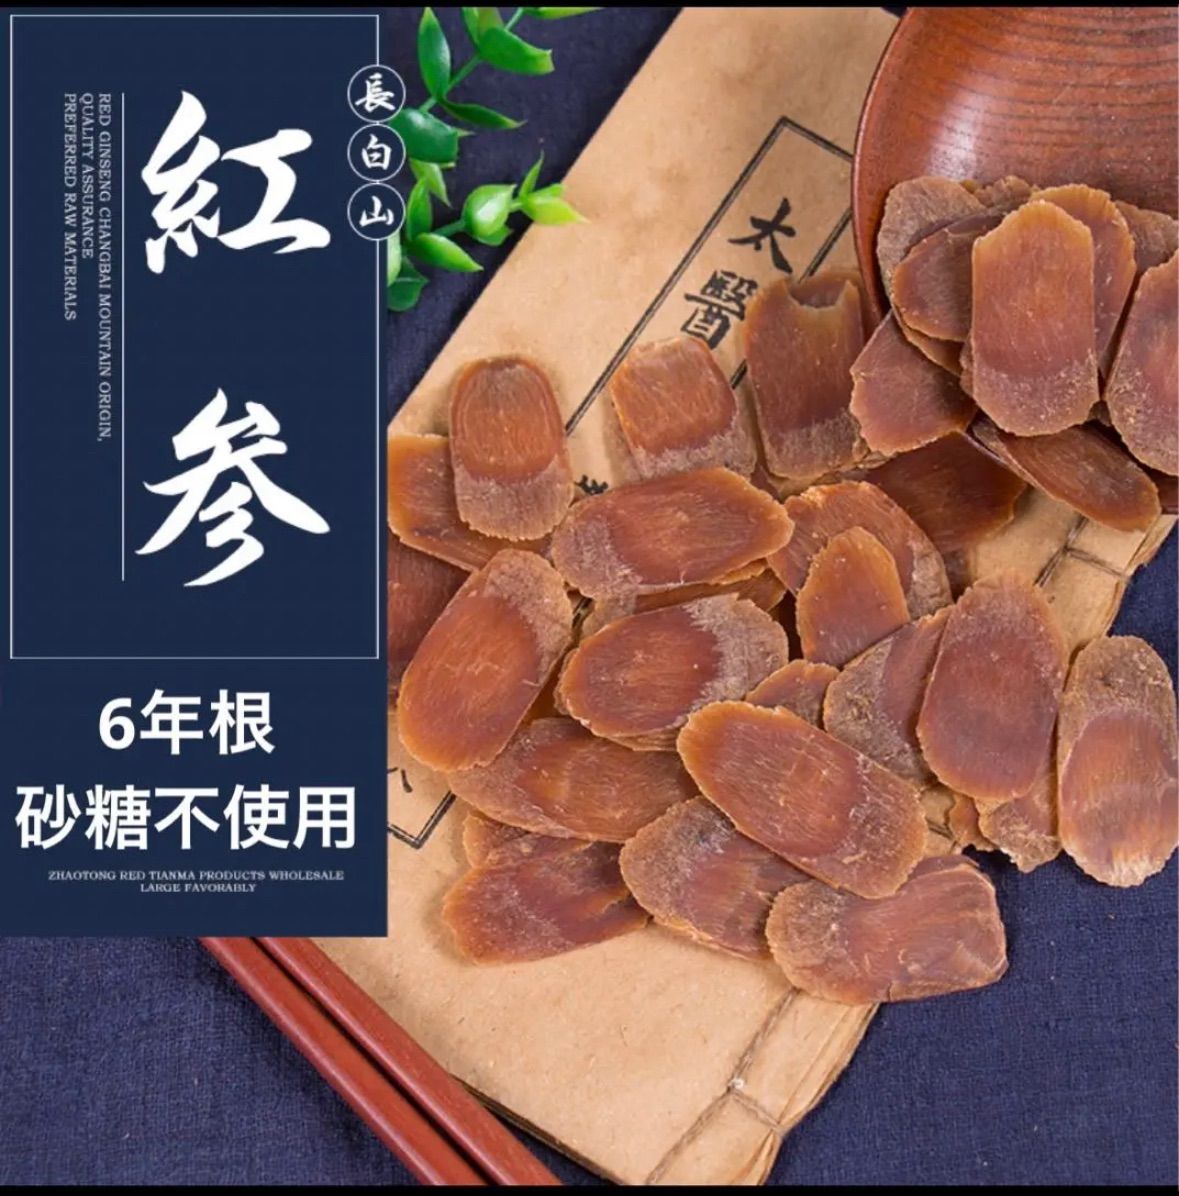 6年根乾燥朝鮮人参 野生環境黒土栽培 紅参(こうじん) 200g - メルカリ